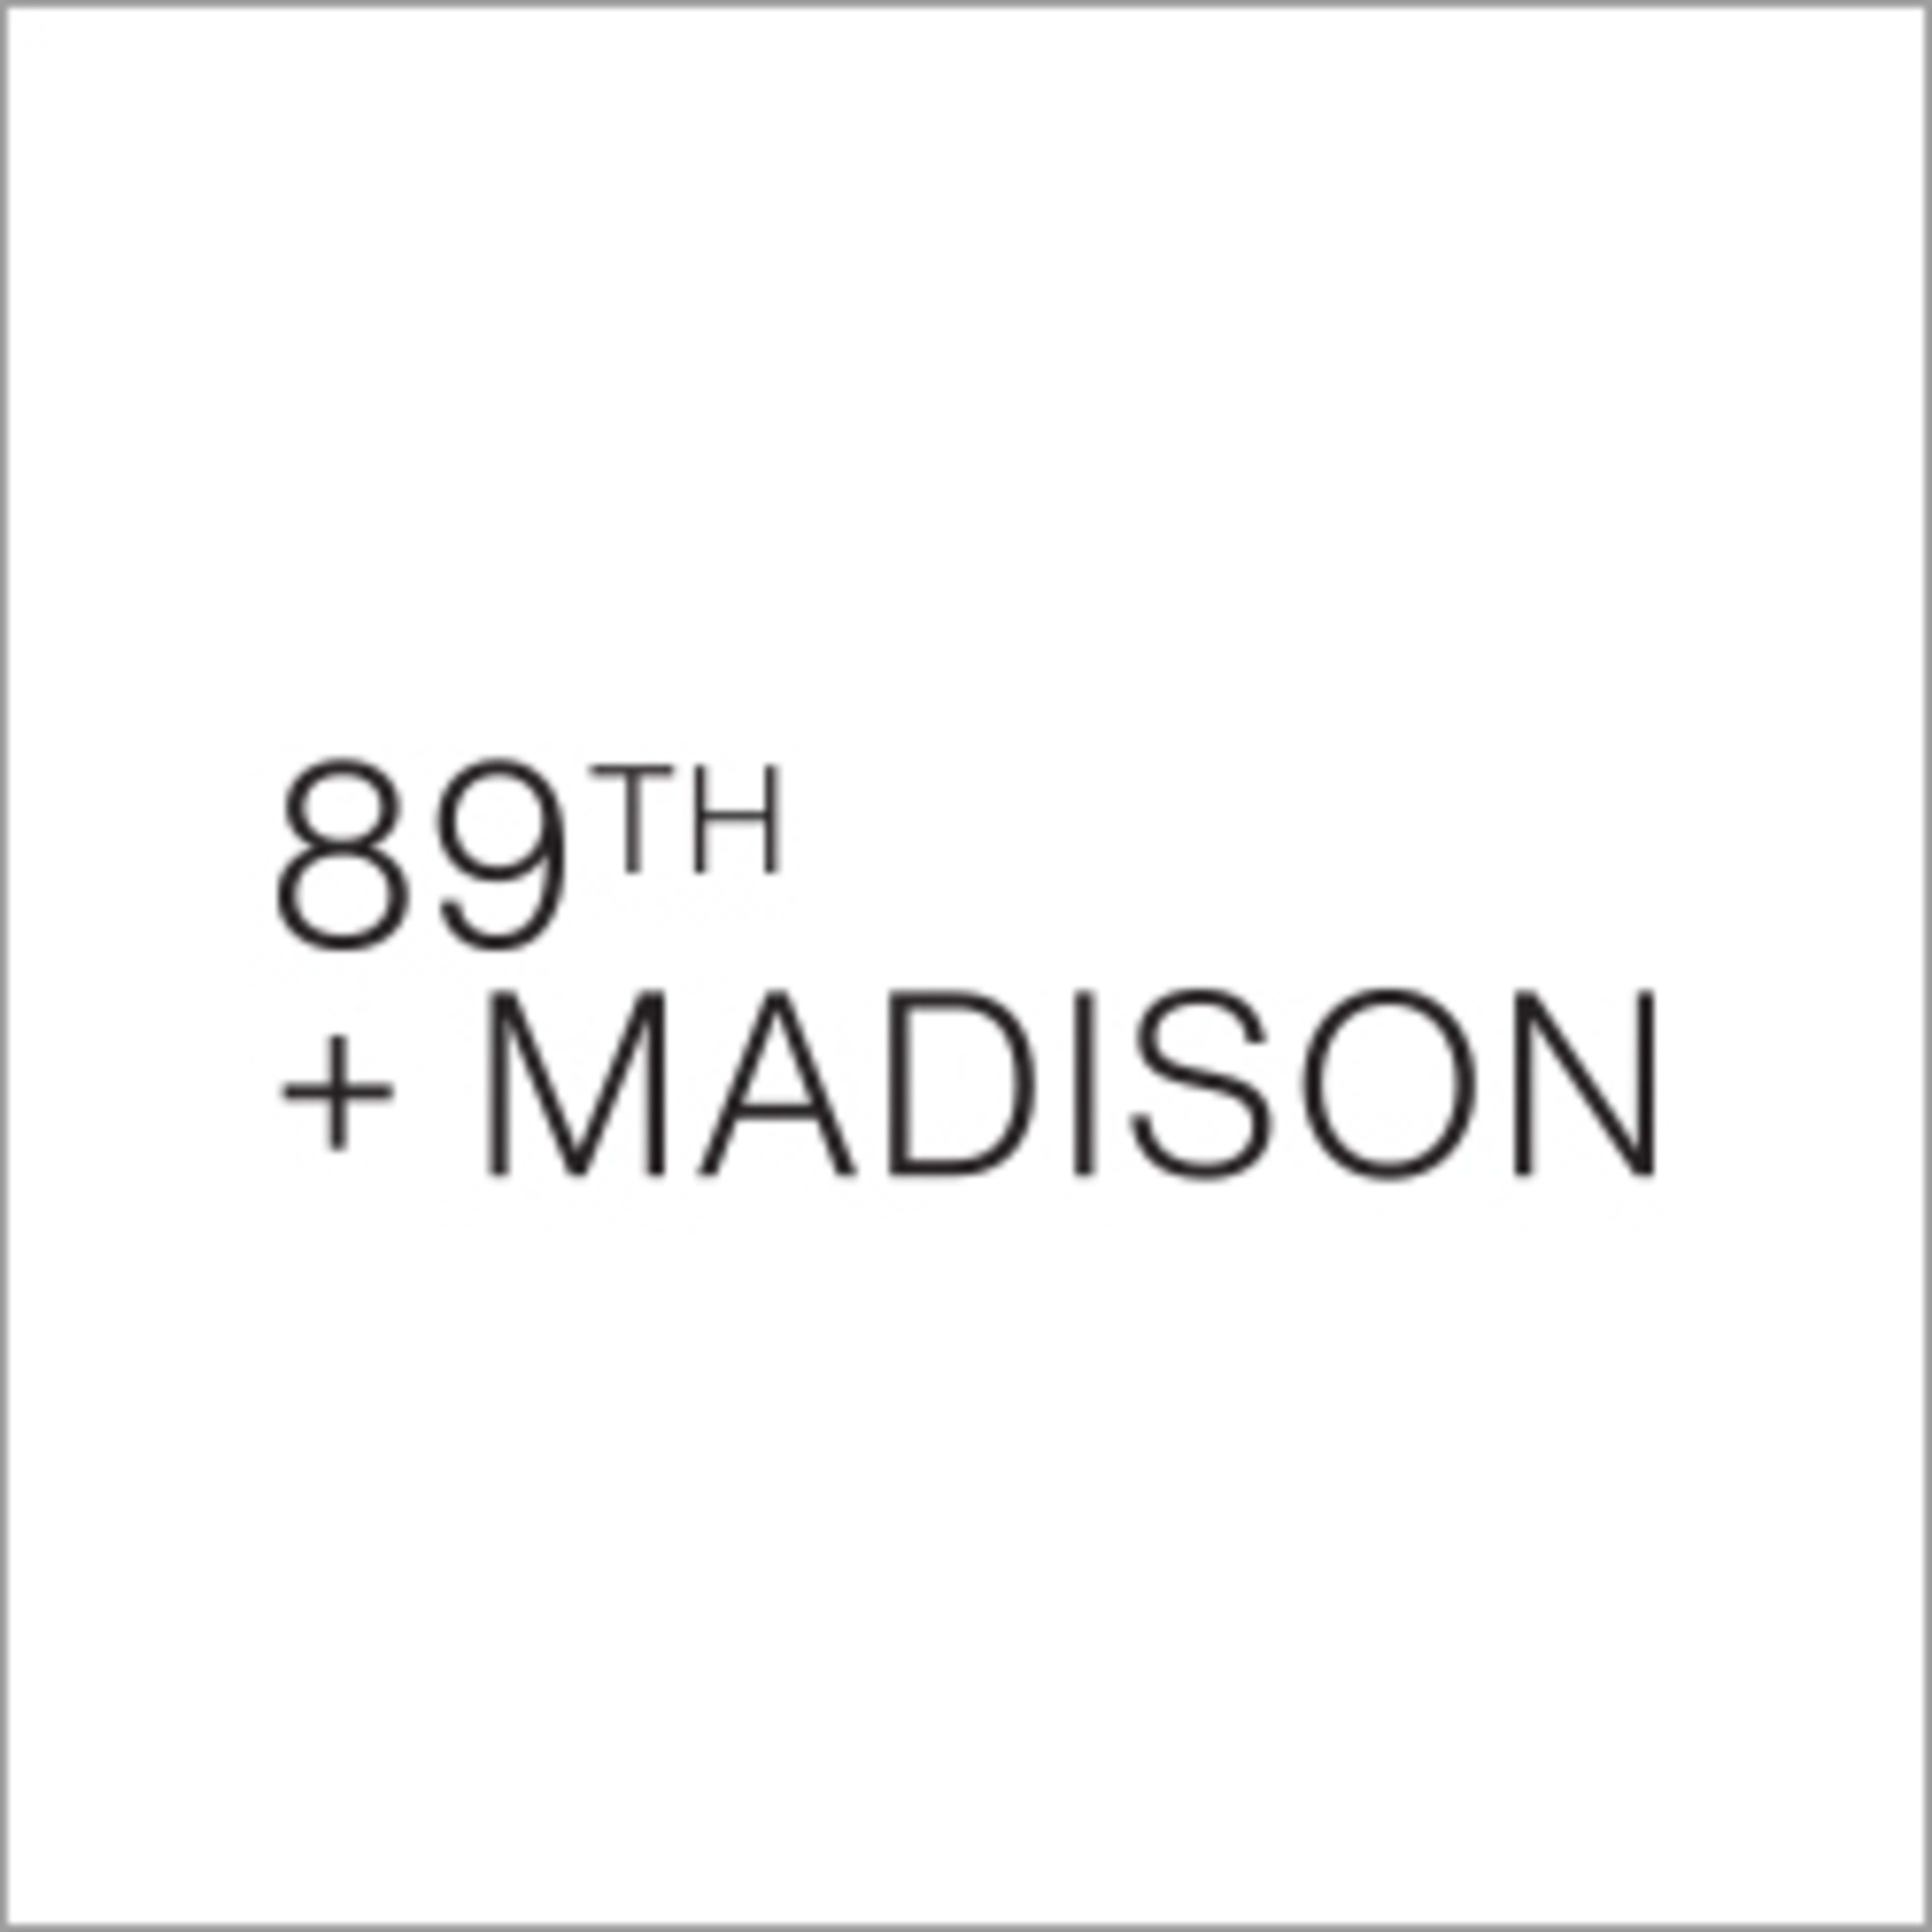 89th + Madison Code